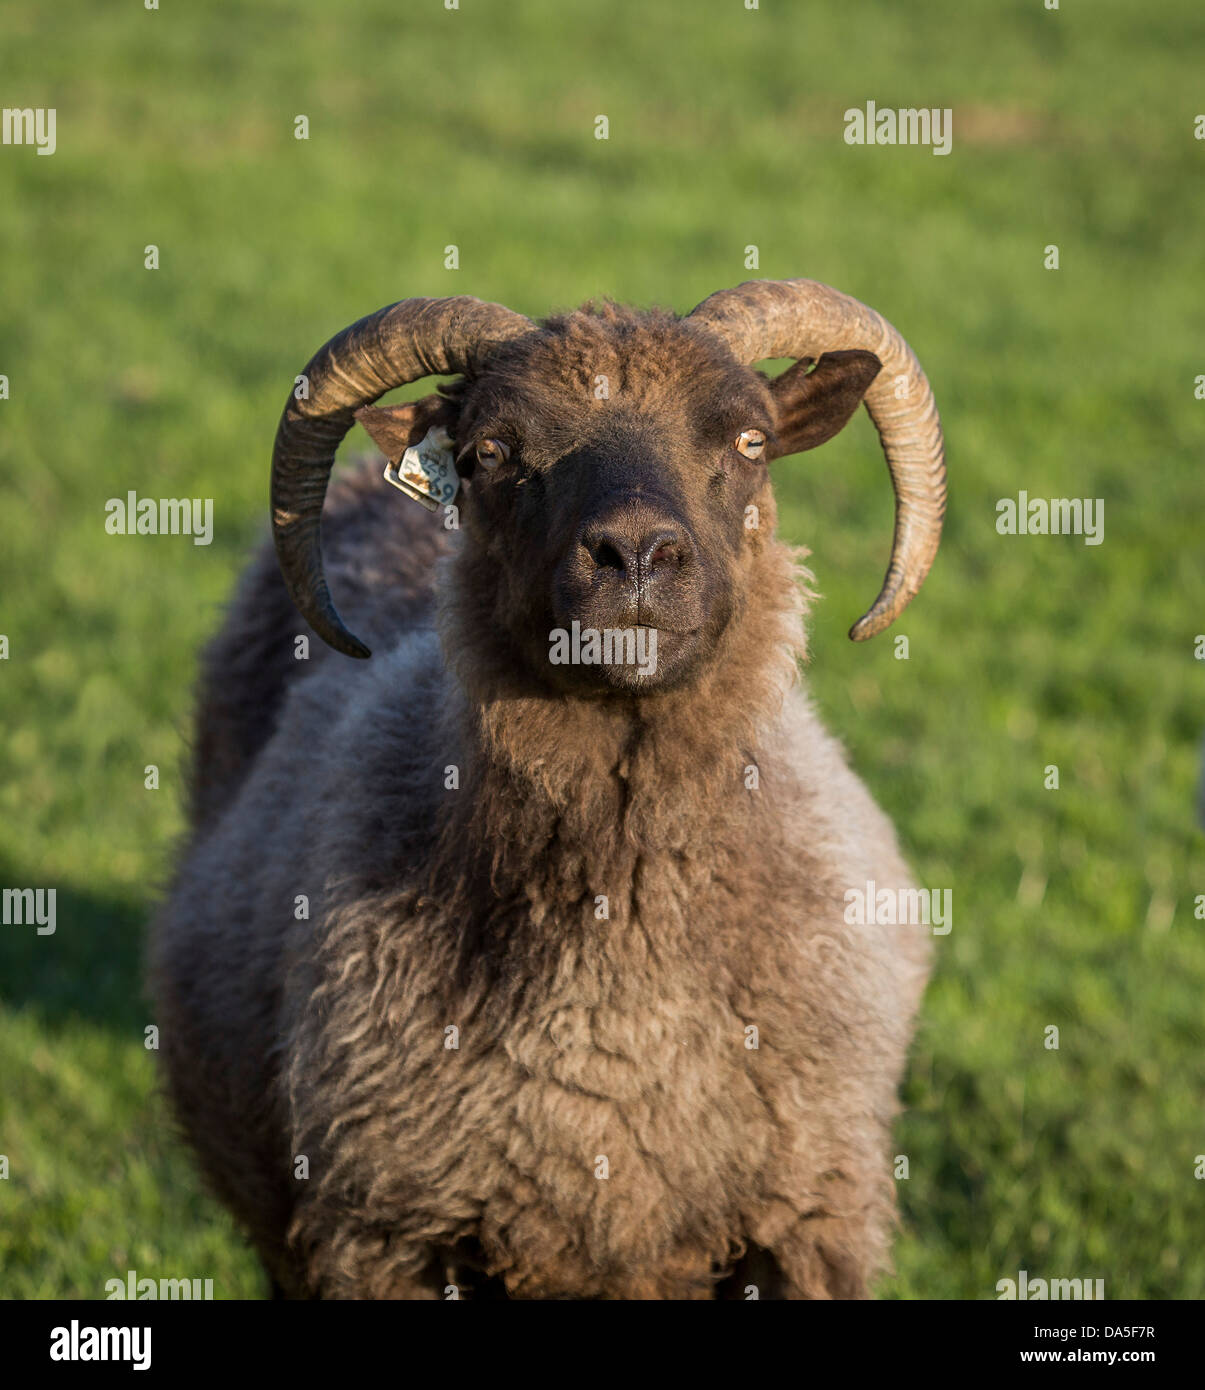 Portrait of Icelandic Sheep, Iceland Stock Photo